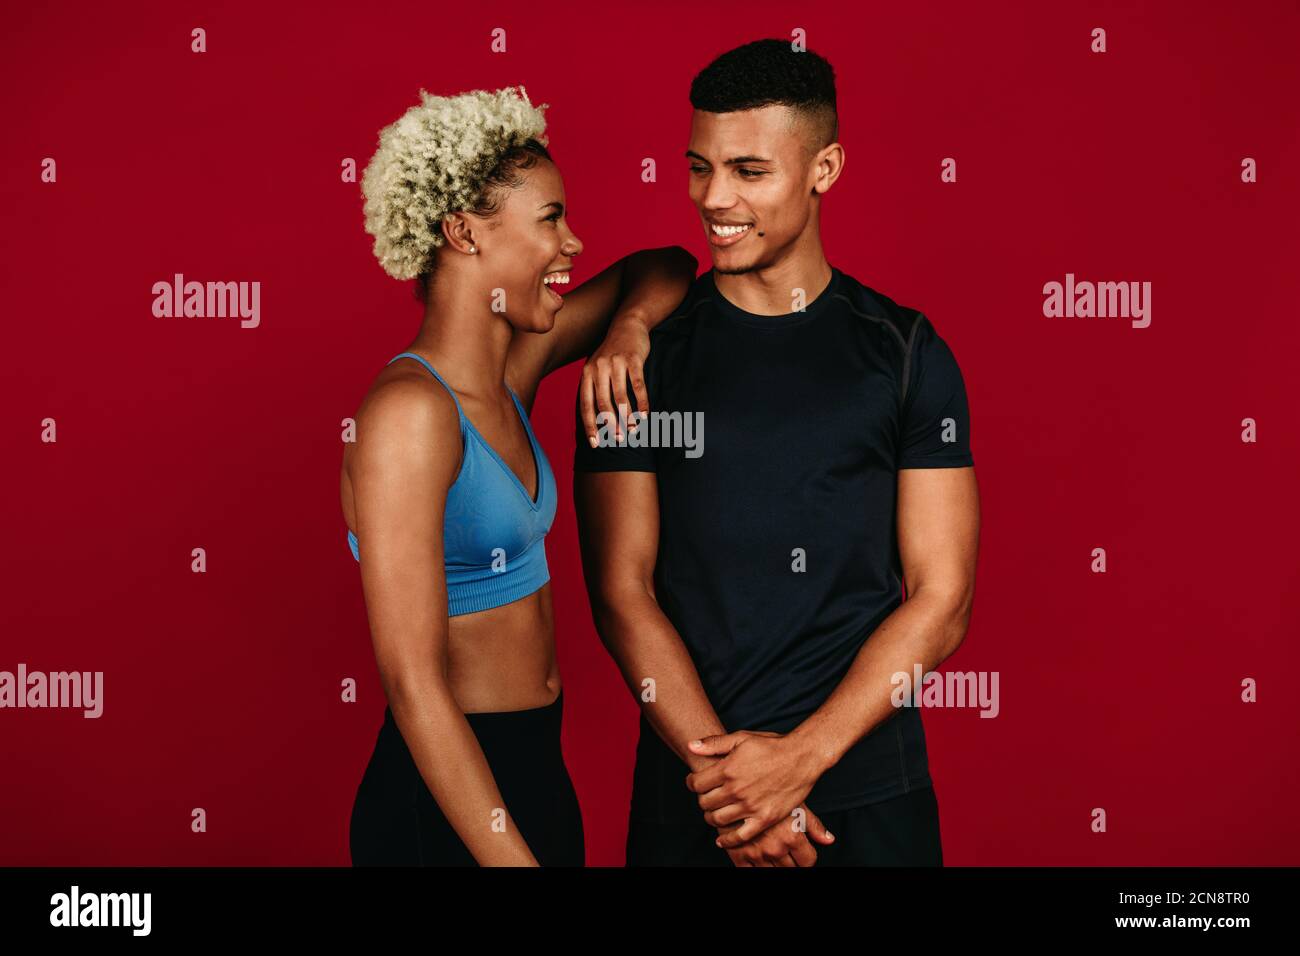 Fitnesspaar, das sich nach dem Training entspannt. Porträt eines afroamerikanischen Fitness-Paares, das lacht und miteinander redet. Stockfoto